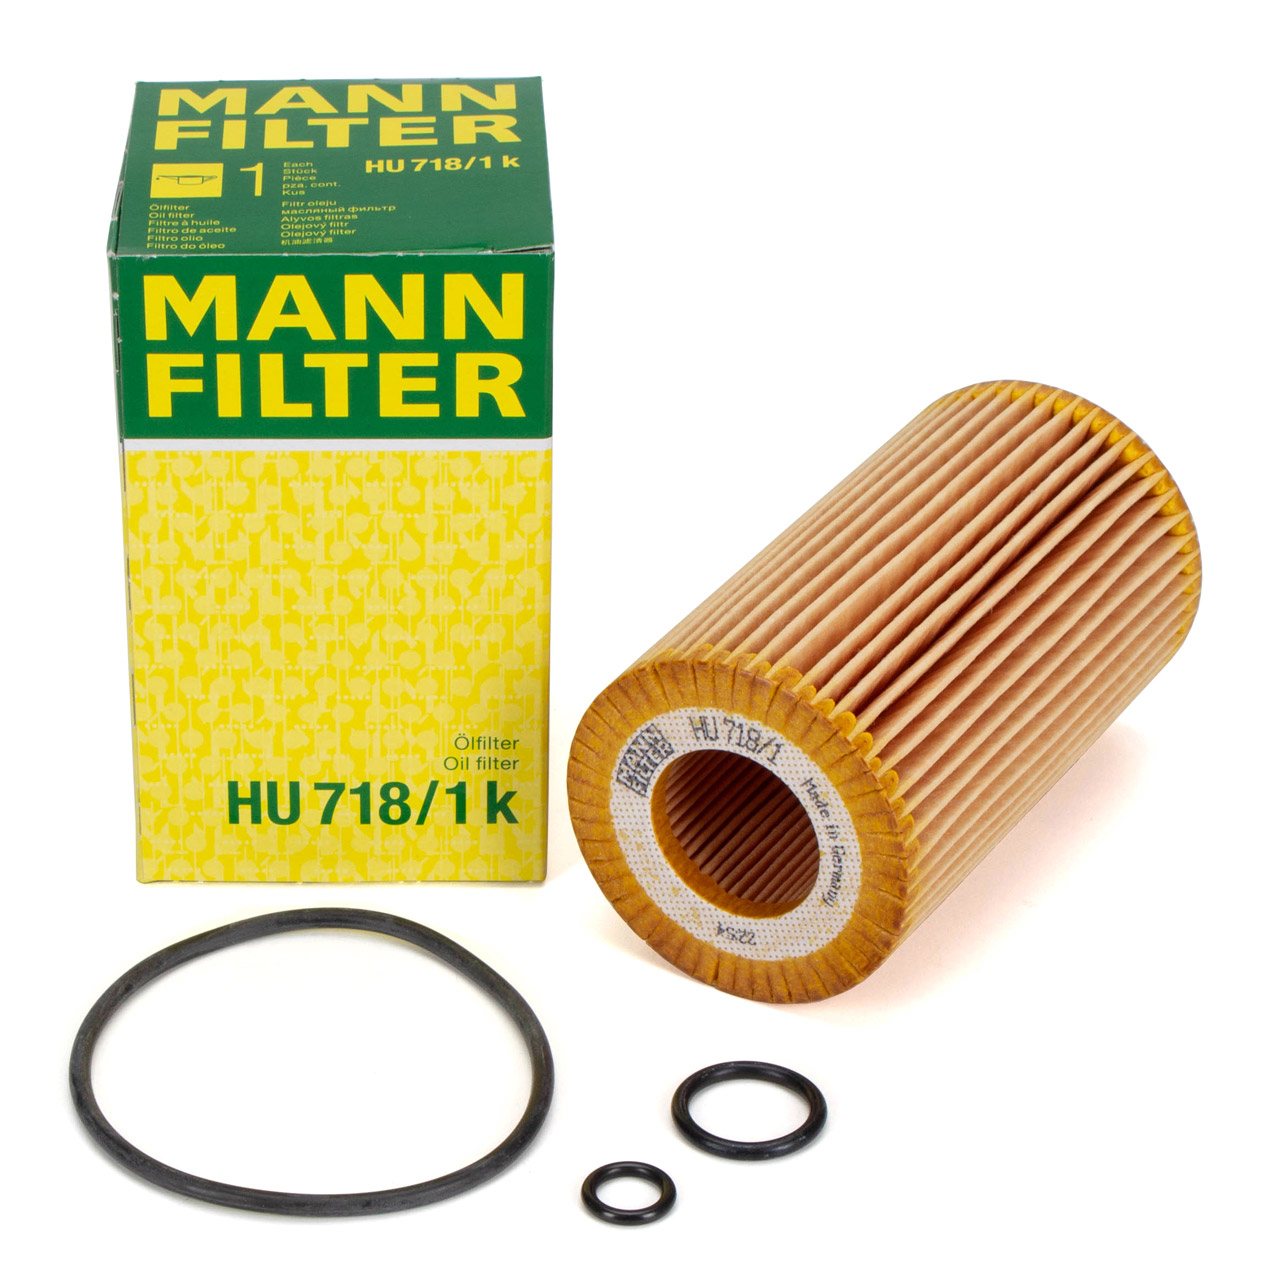 MANN HU718/1k Ölfilter MERCEDES-BENZ W202 W203 W204 W210 W211 6111800009